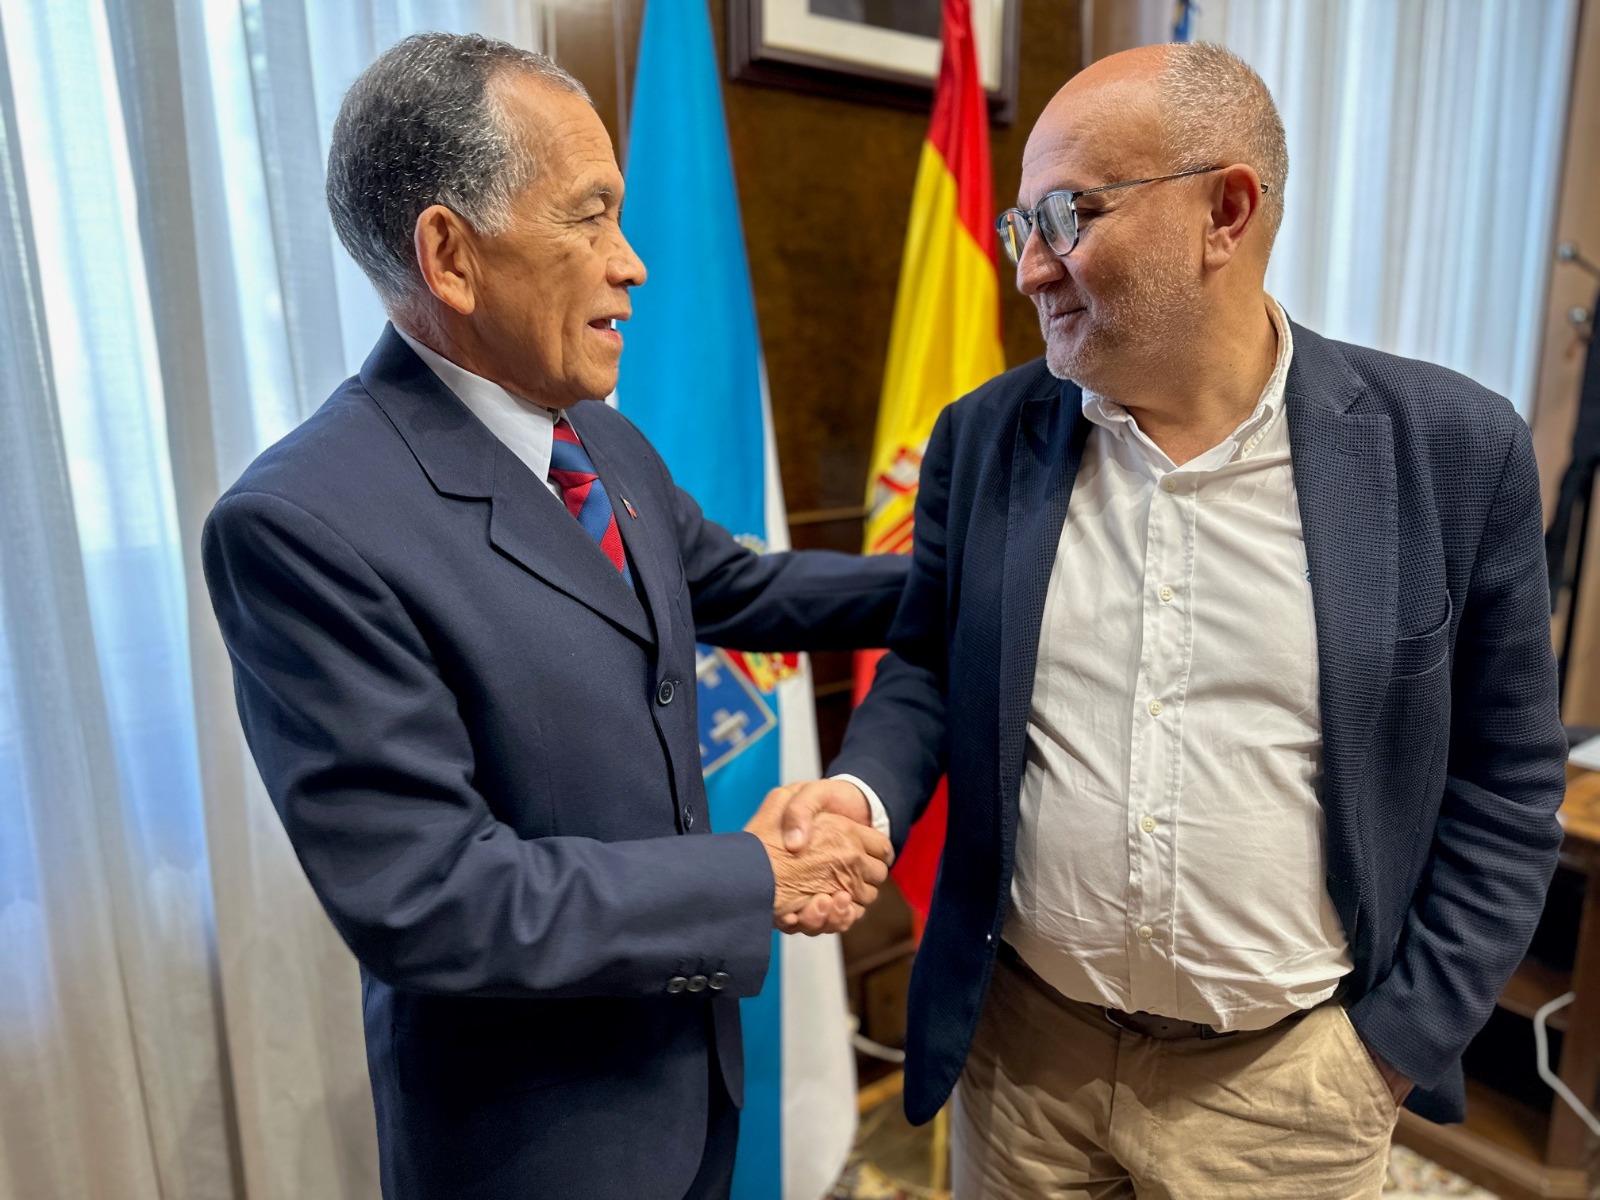 Cónsul venezolano en Vigo es recibido por el Subdelegado de Gobierno en Pontevedra